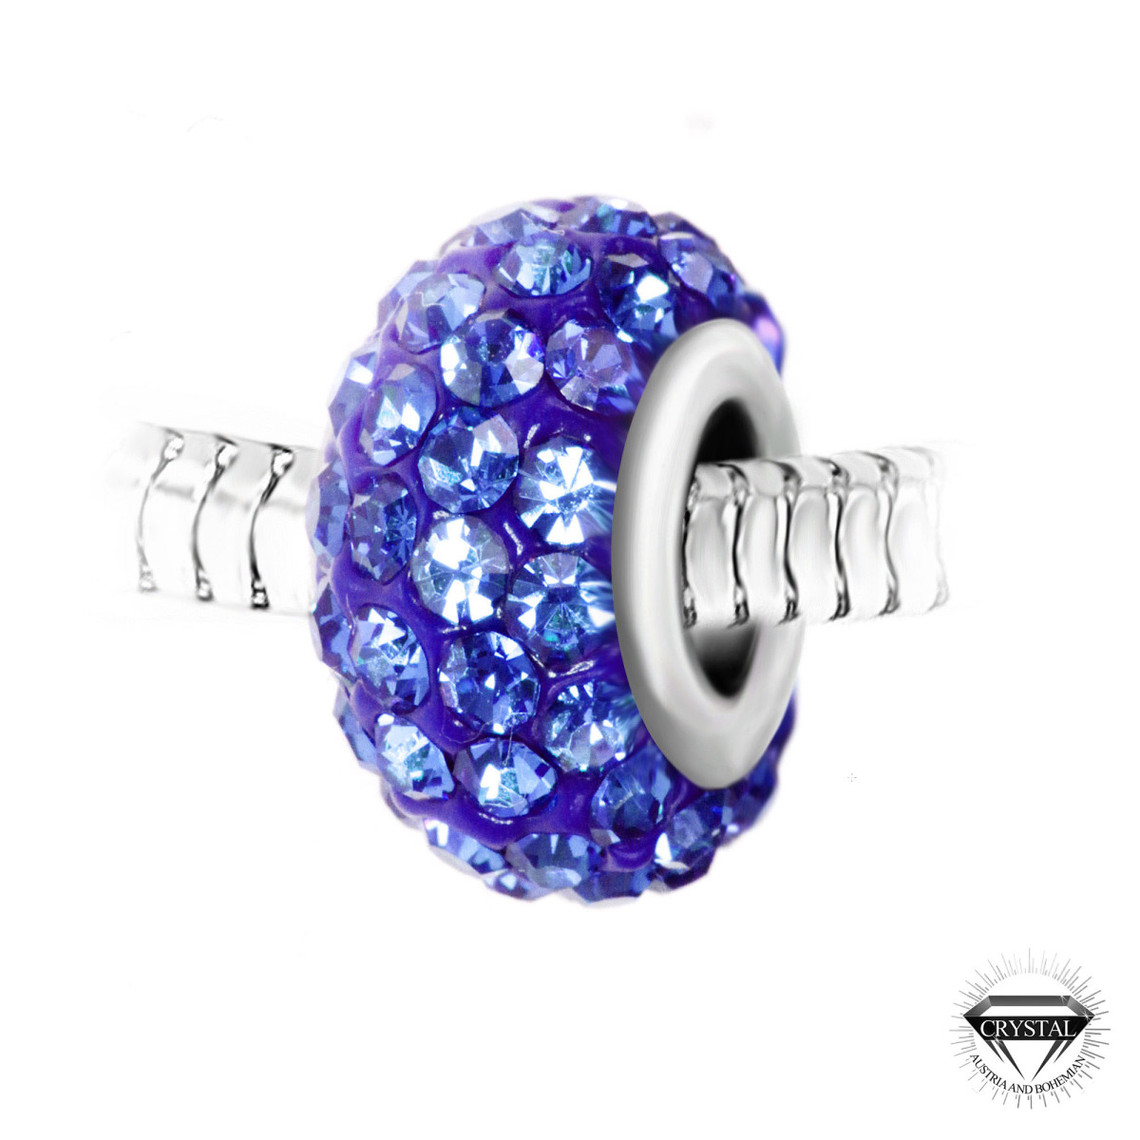 charm perle pavé de cristaux bleus et acier par sc crystal